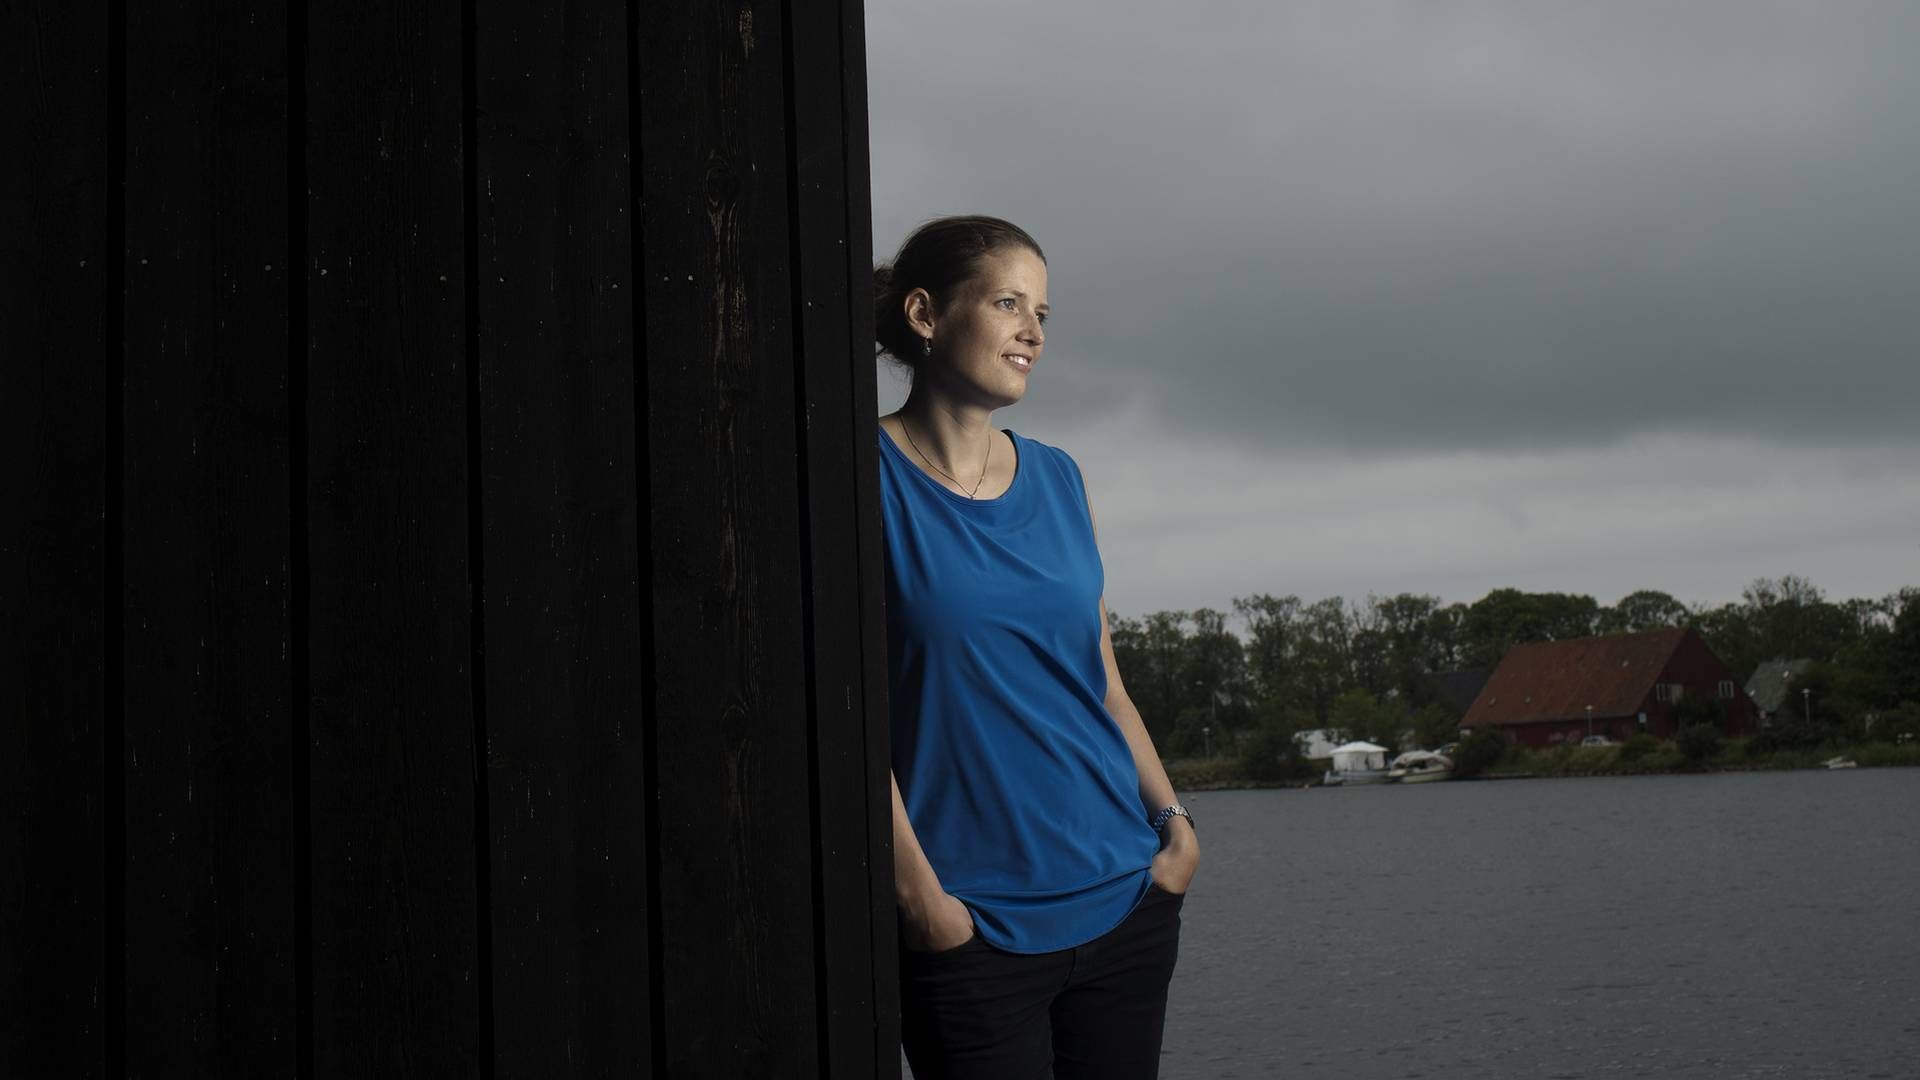 Mette Lykke har aldrig haft ambitioner om at blive leder eller direktør. Alligevel fik hun direktørtitlen som 31-årig i Endomondo og har i dag samme titel i Too Good To Go. | Foto: Peter Hove Olesen